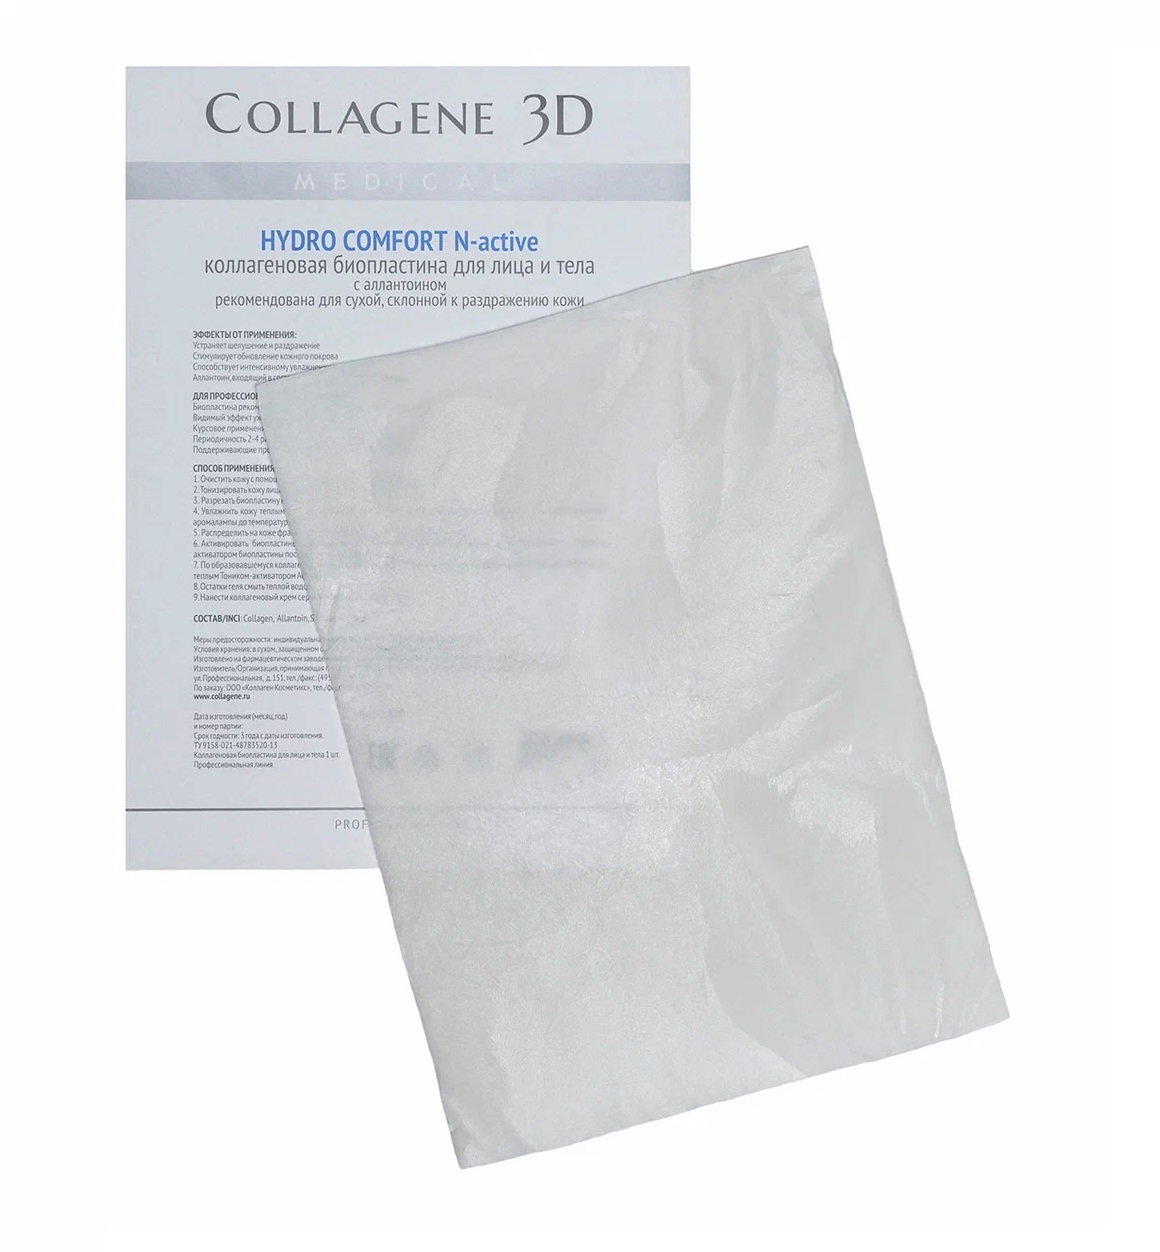 Медикал Коллаген 3Д Биопластины для лица и тела N-актив  с аллантоином, А4 (Medical Collagene 3D, Hydro Comfort) фото 0